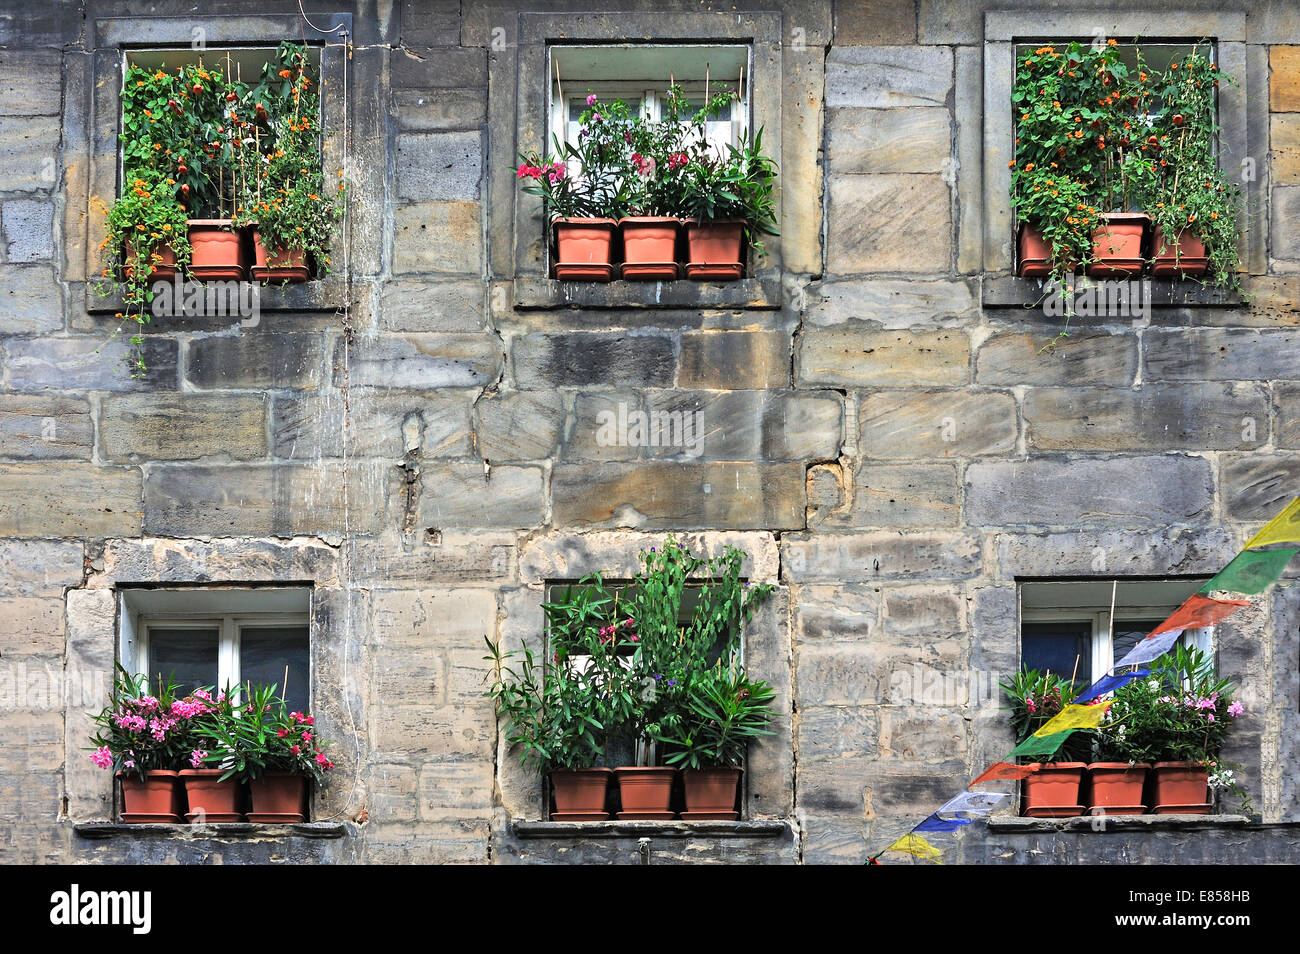 Ventana fachada decorada con plantas en macetas, Bayreuth, Baviera, Alemania Foto de stock